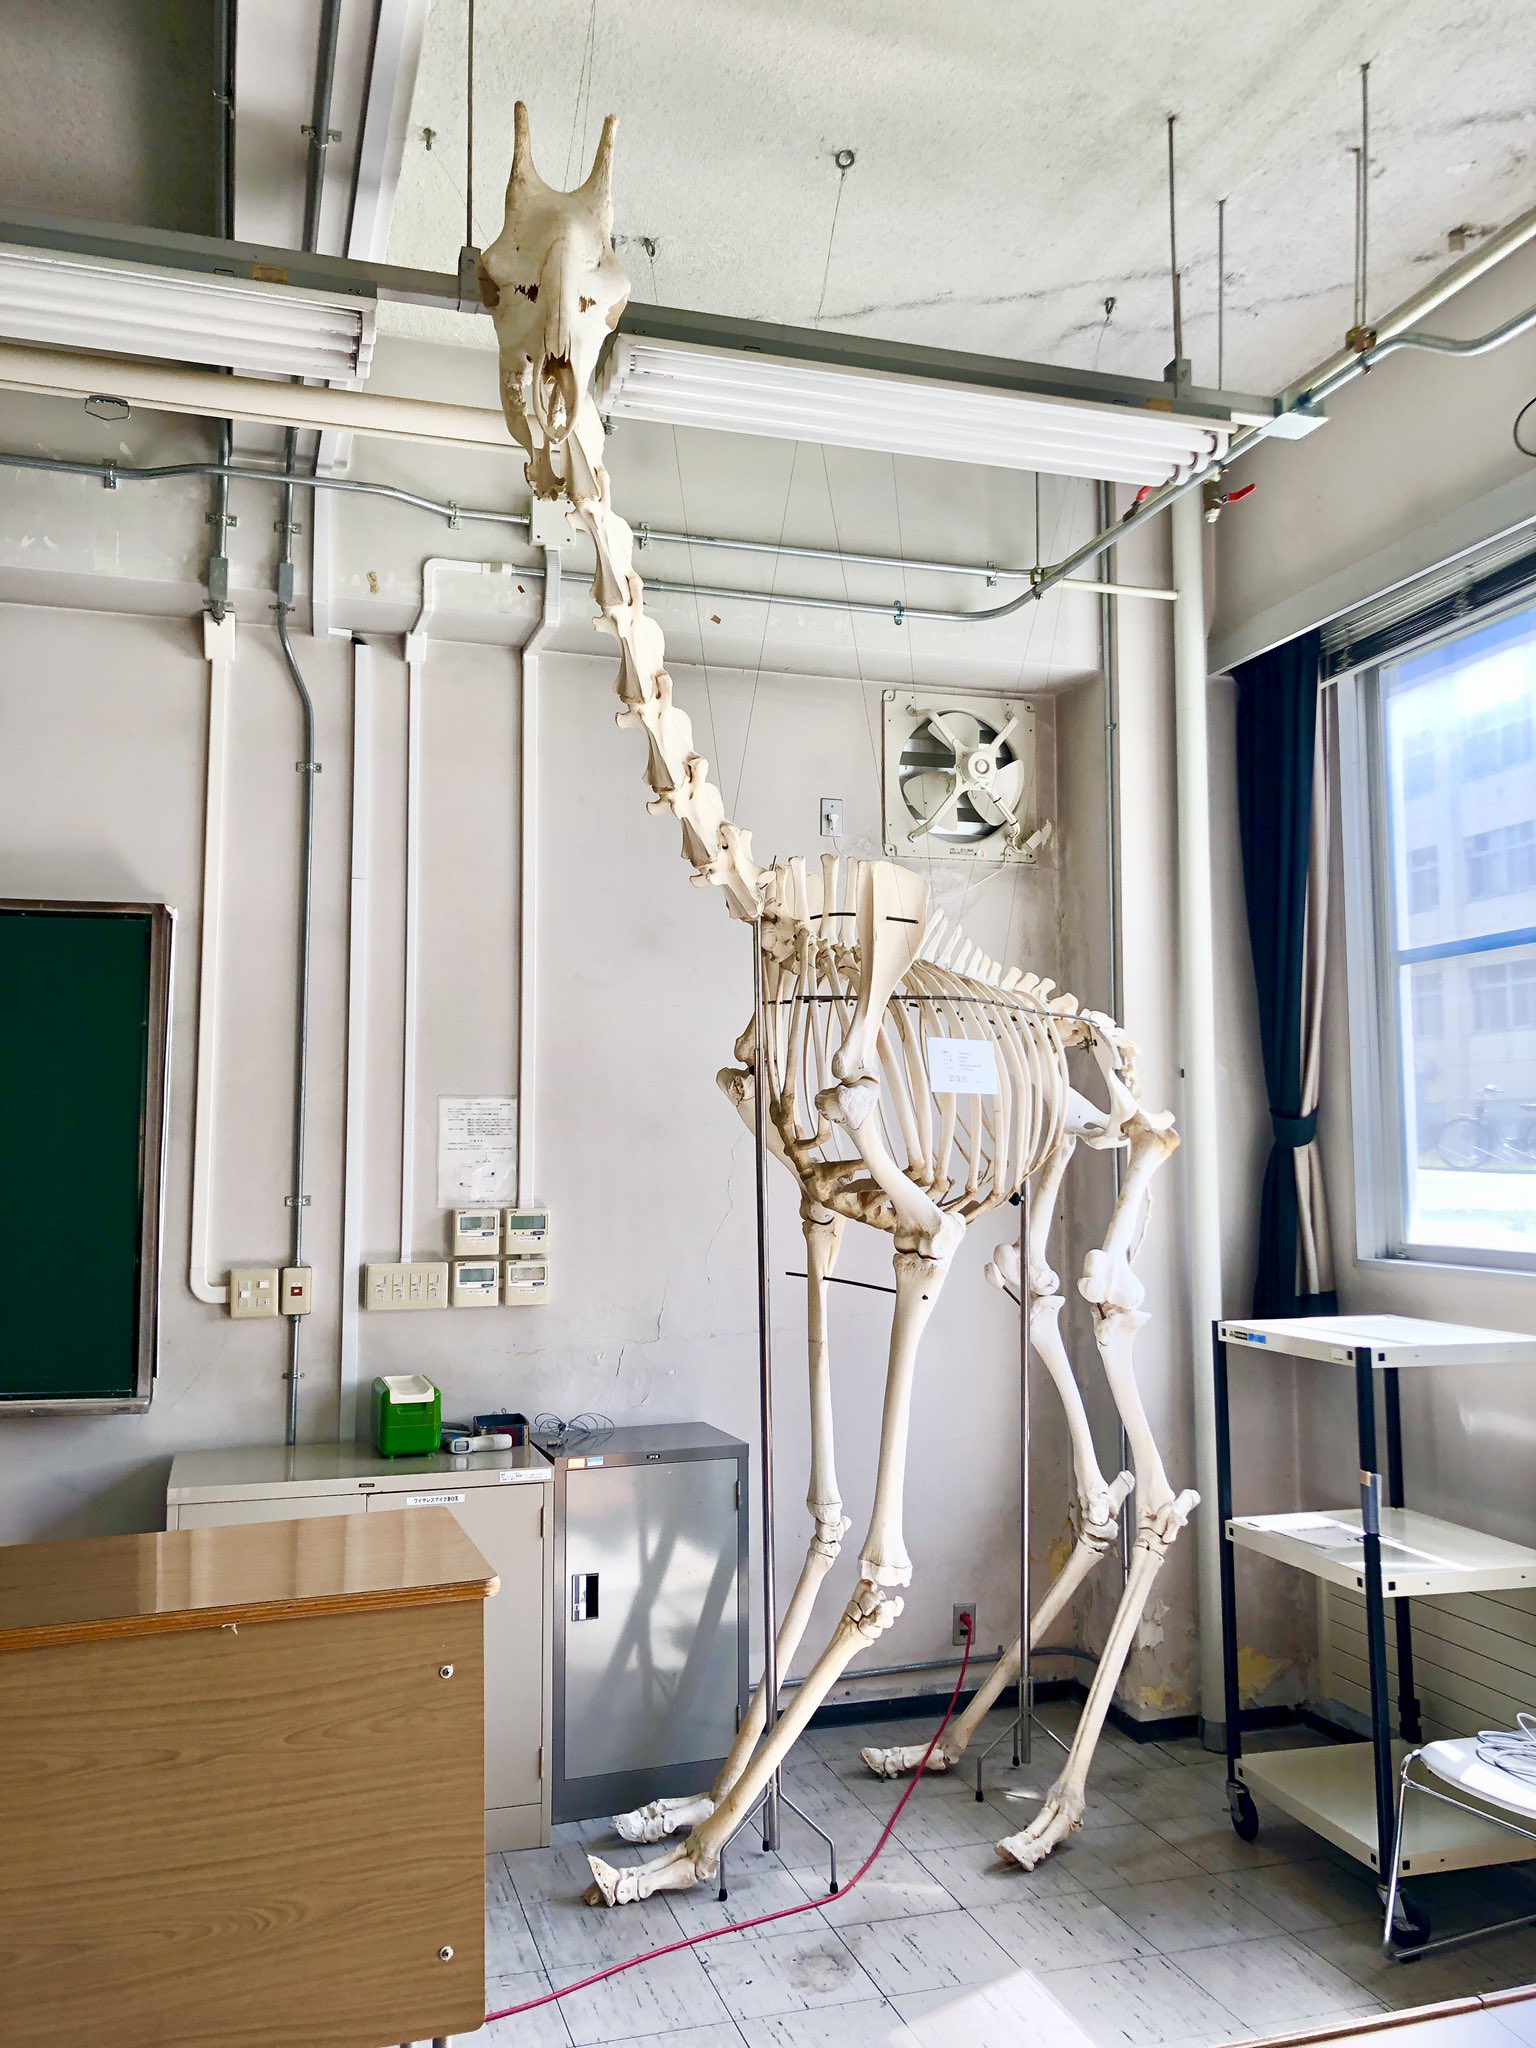 酪農学園大学 公式 キリンの骨格標本がある教室 酪農学園大学 キリン 骨格標本 教室 T Co Kjkzwkfrtm Twitter